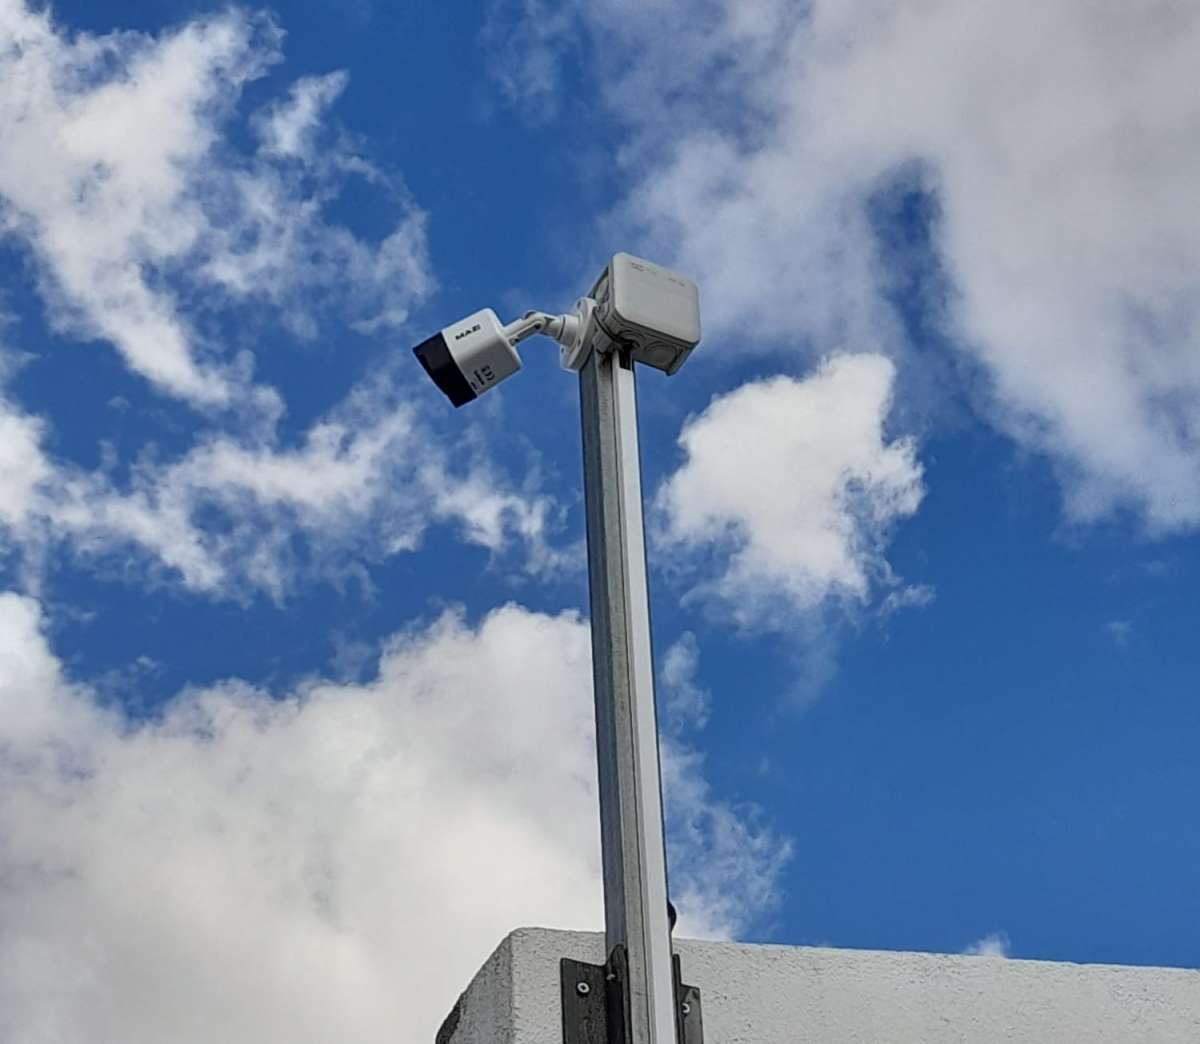 Técnico CCTV Certificado - Sintra - Segurança e Alarmes